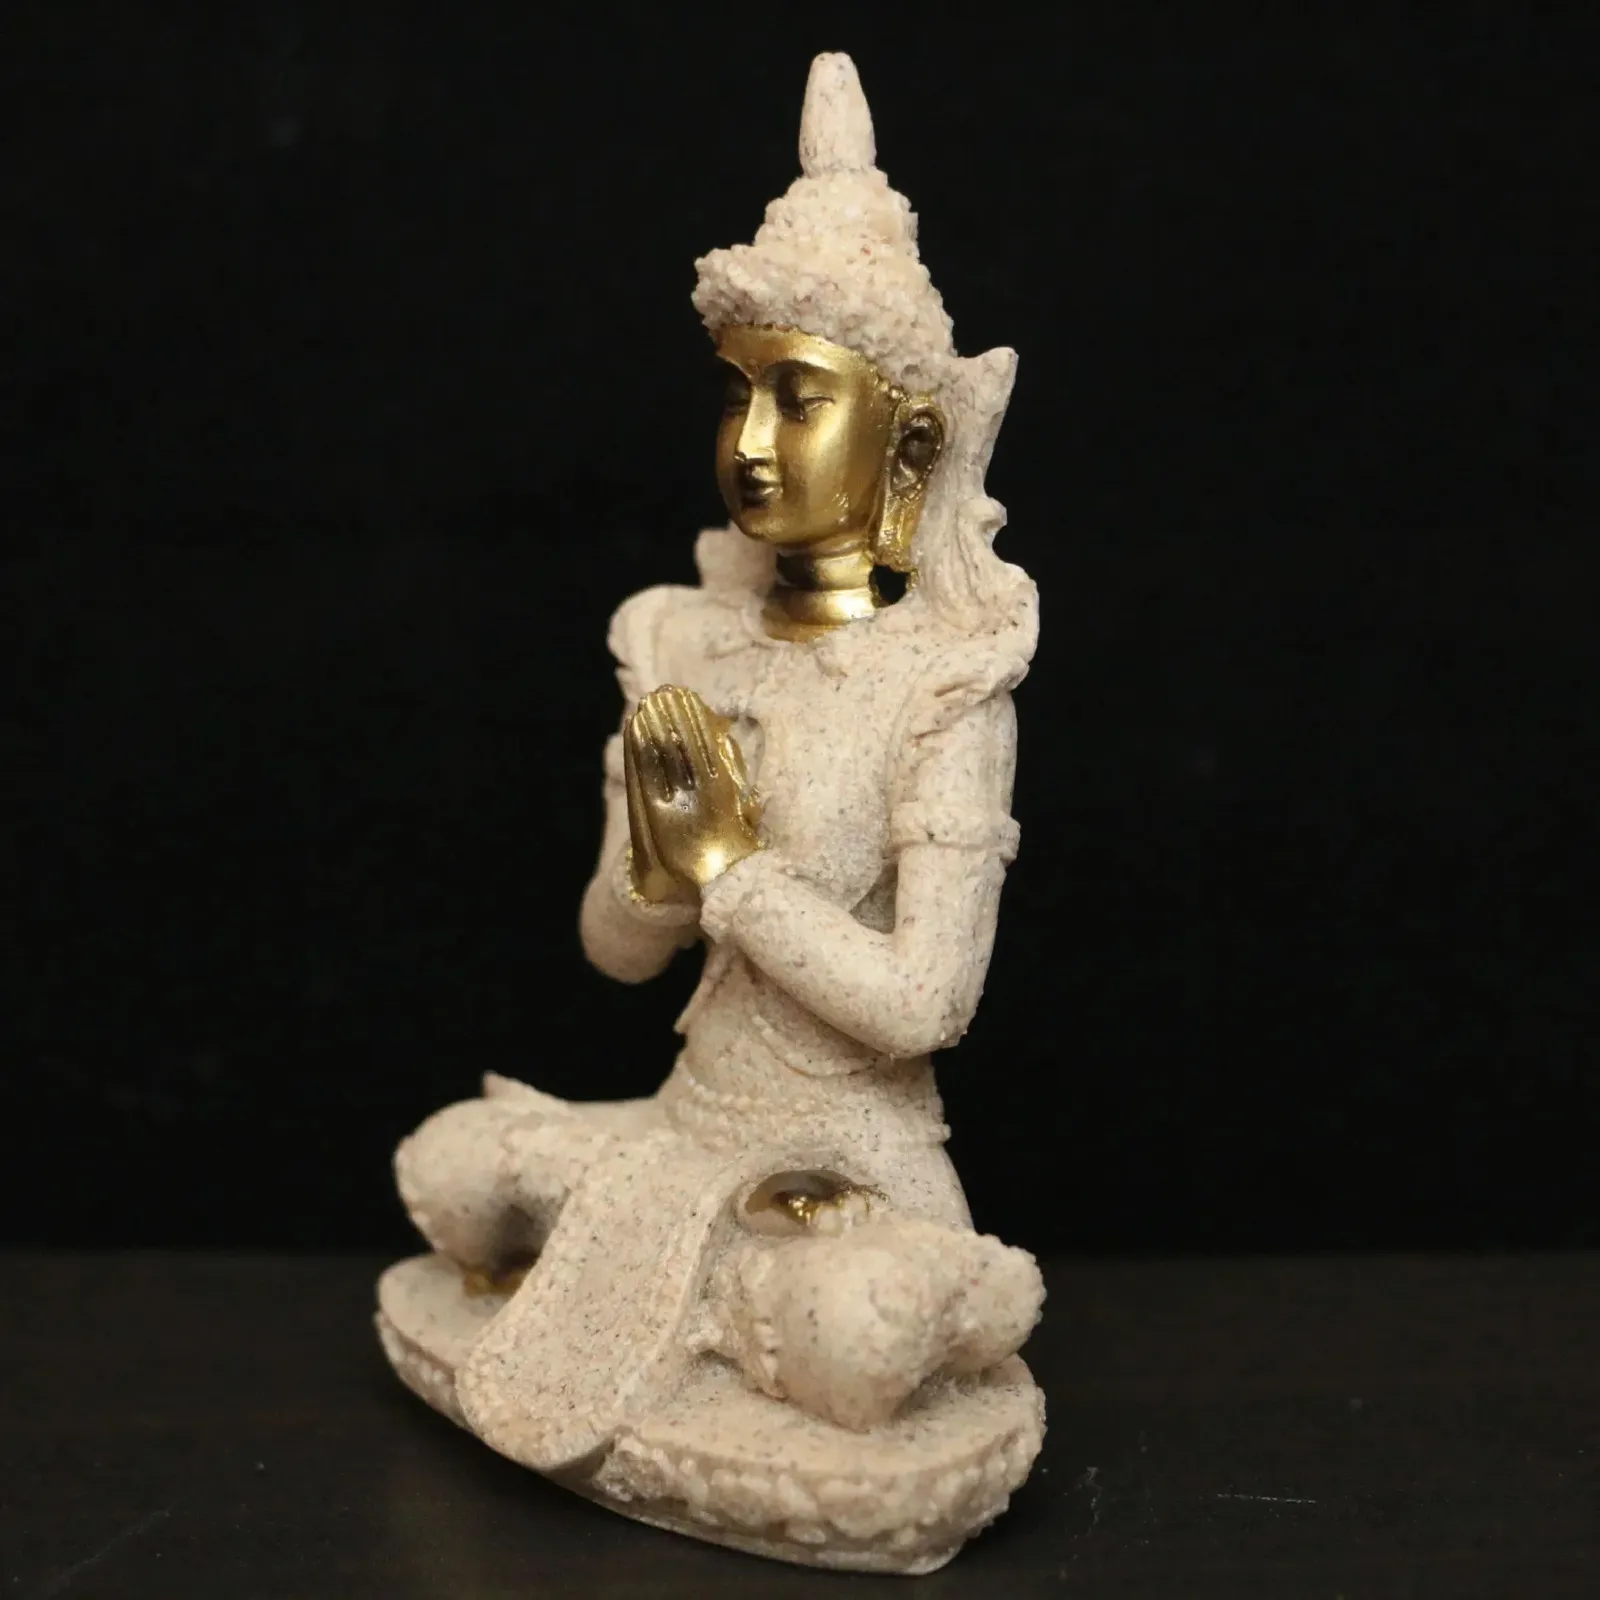 Dekorativa föremål Figurer Miniatyr Buddha figur Nature Sandstone Thailand Fengshui Buddha Statue Hindu vardagsrum Skulptur Prydnad Heminredning 231113